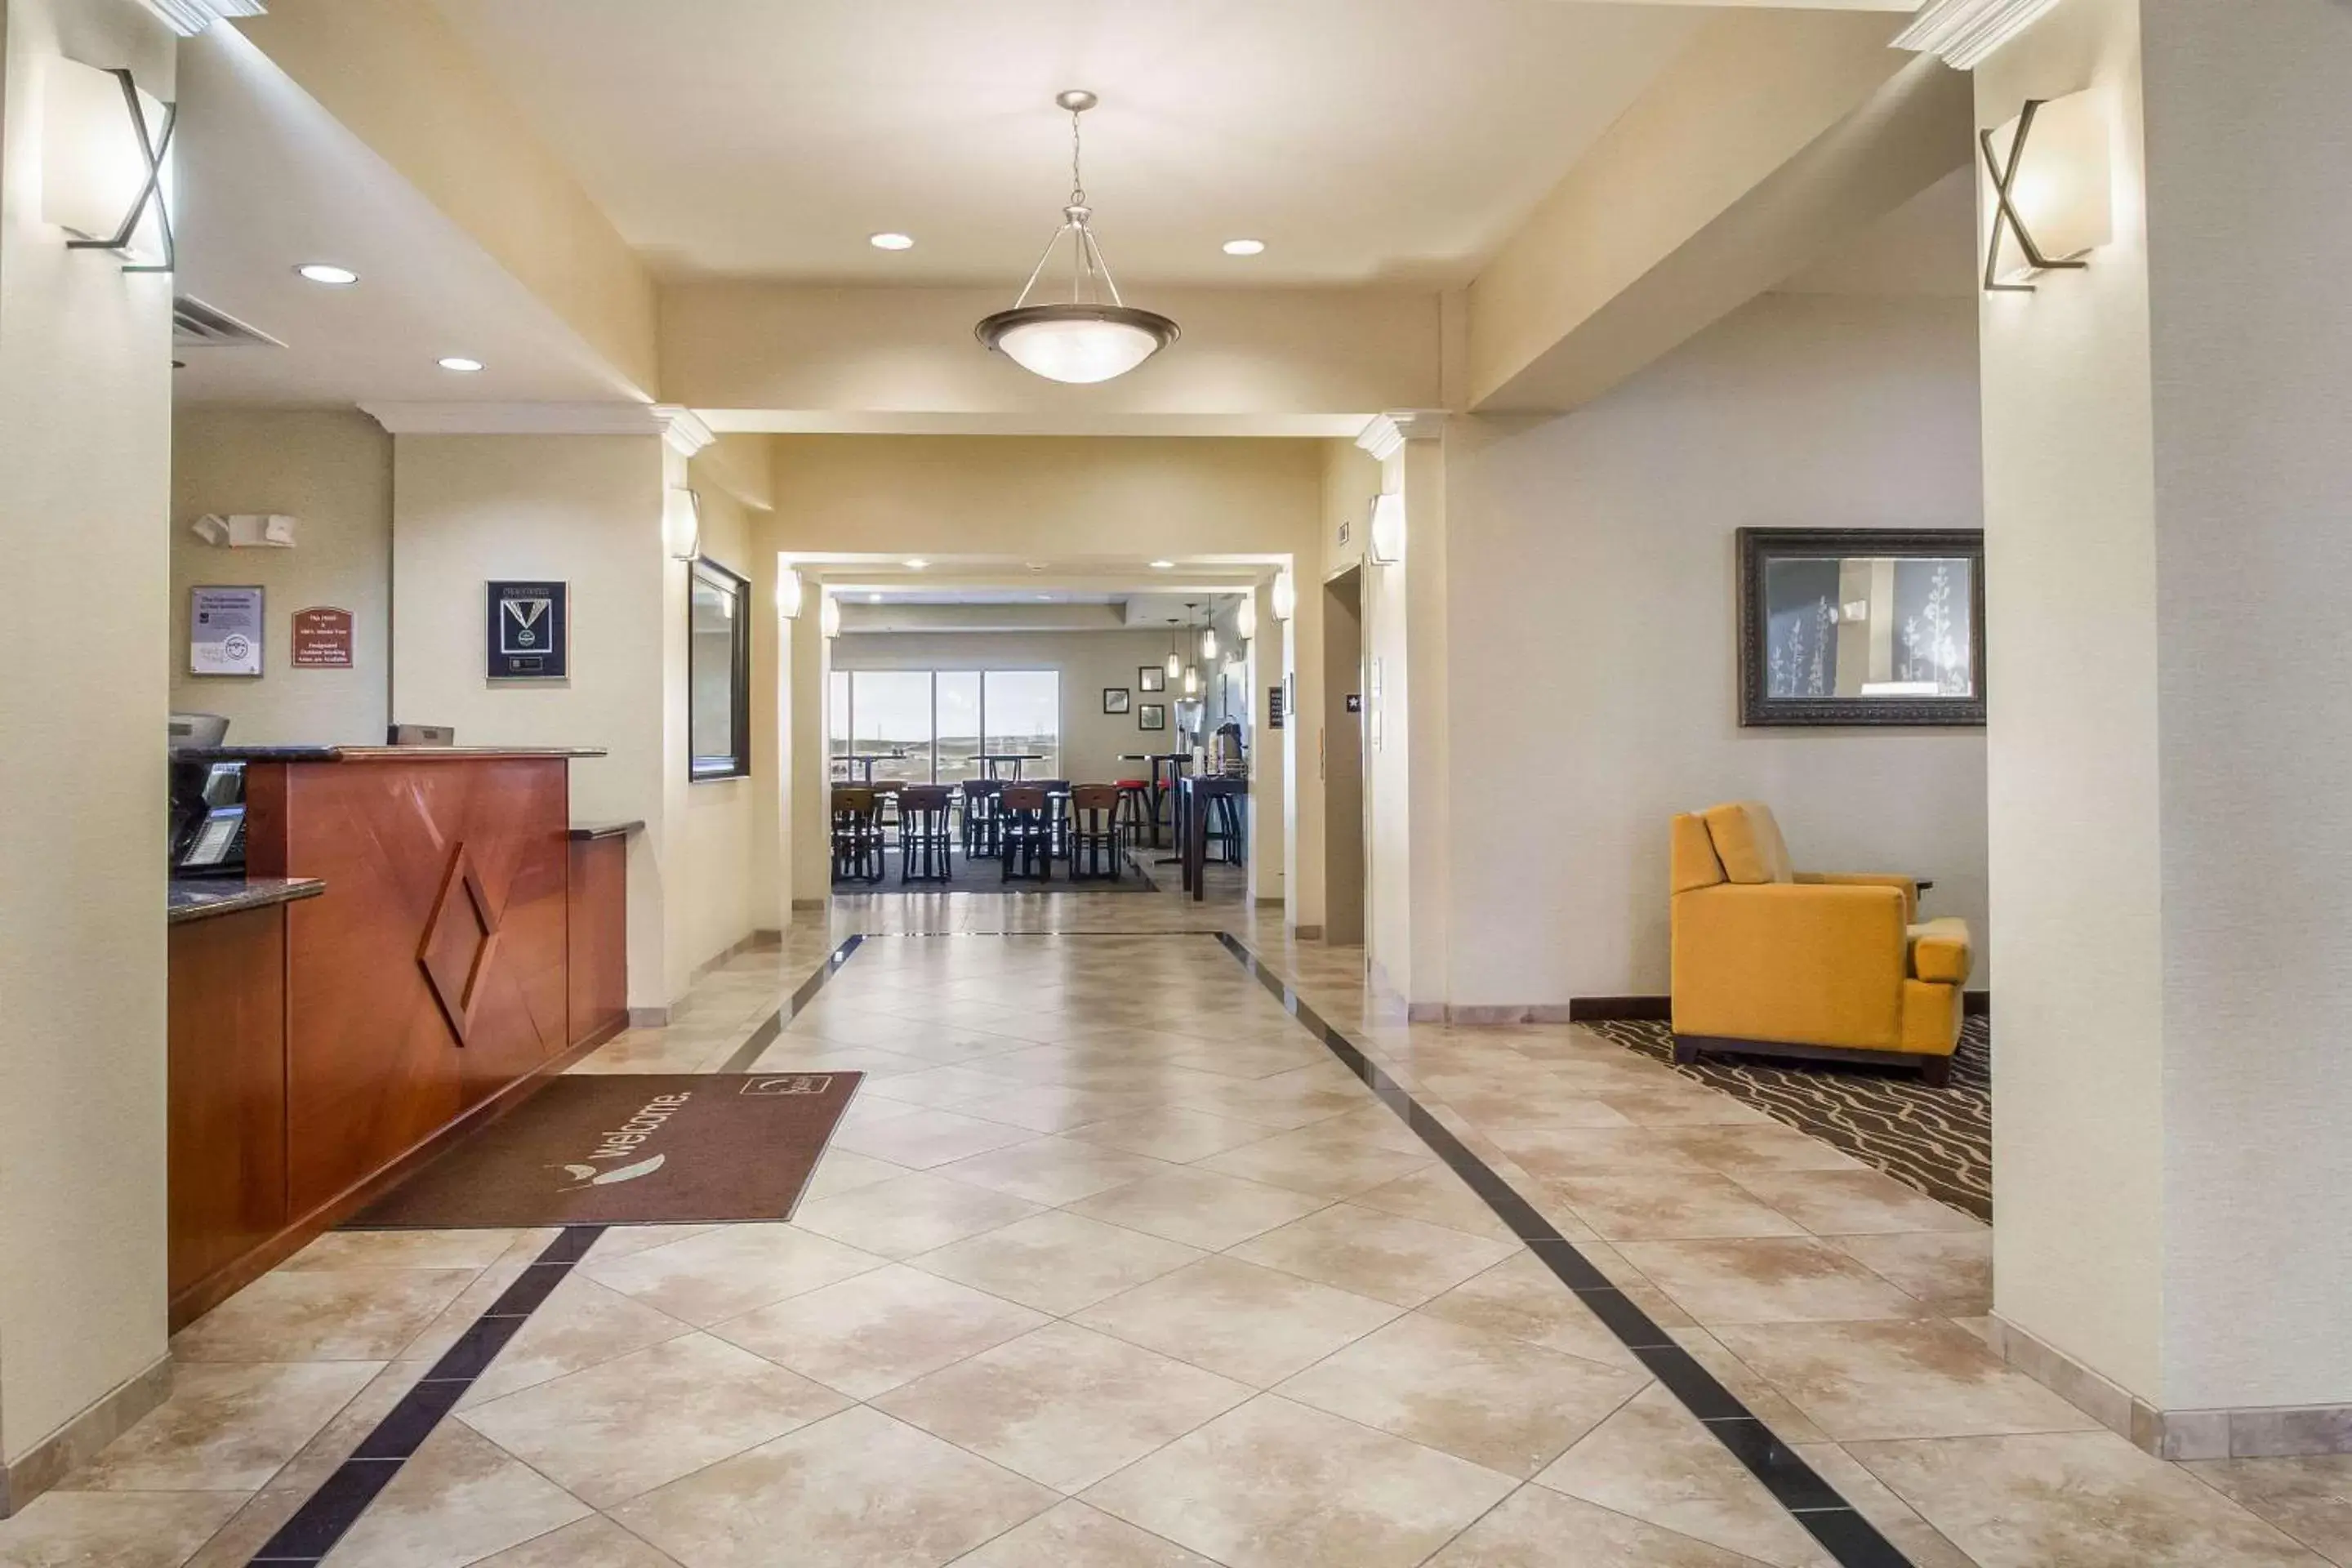 Lobby or reception, Lobby/Reception in Sleep Inn & Suites Rapid City